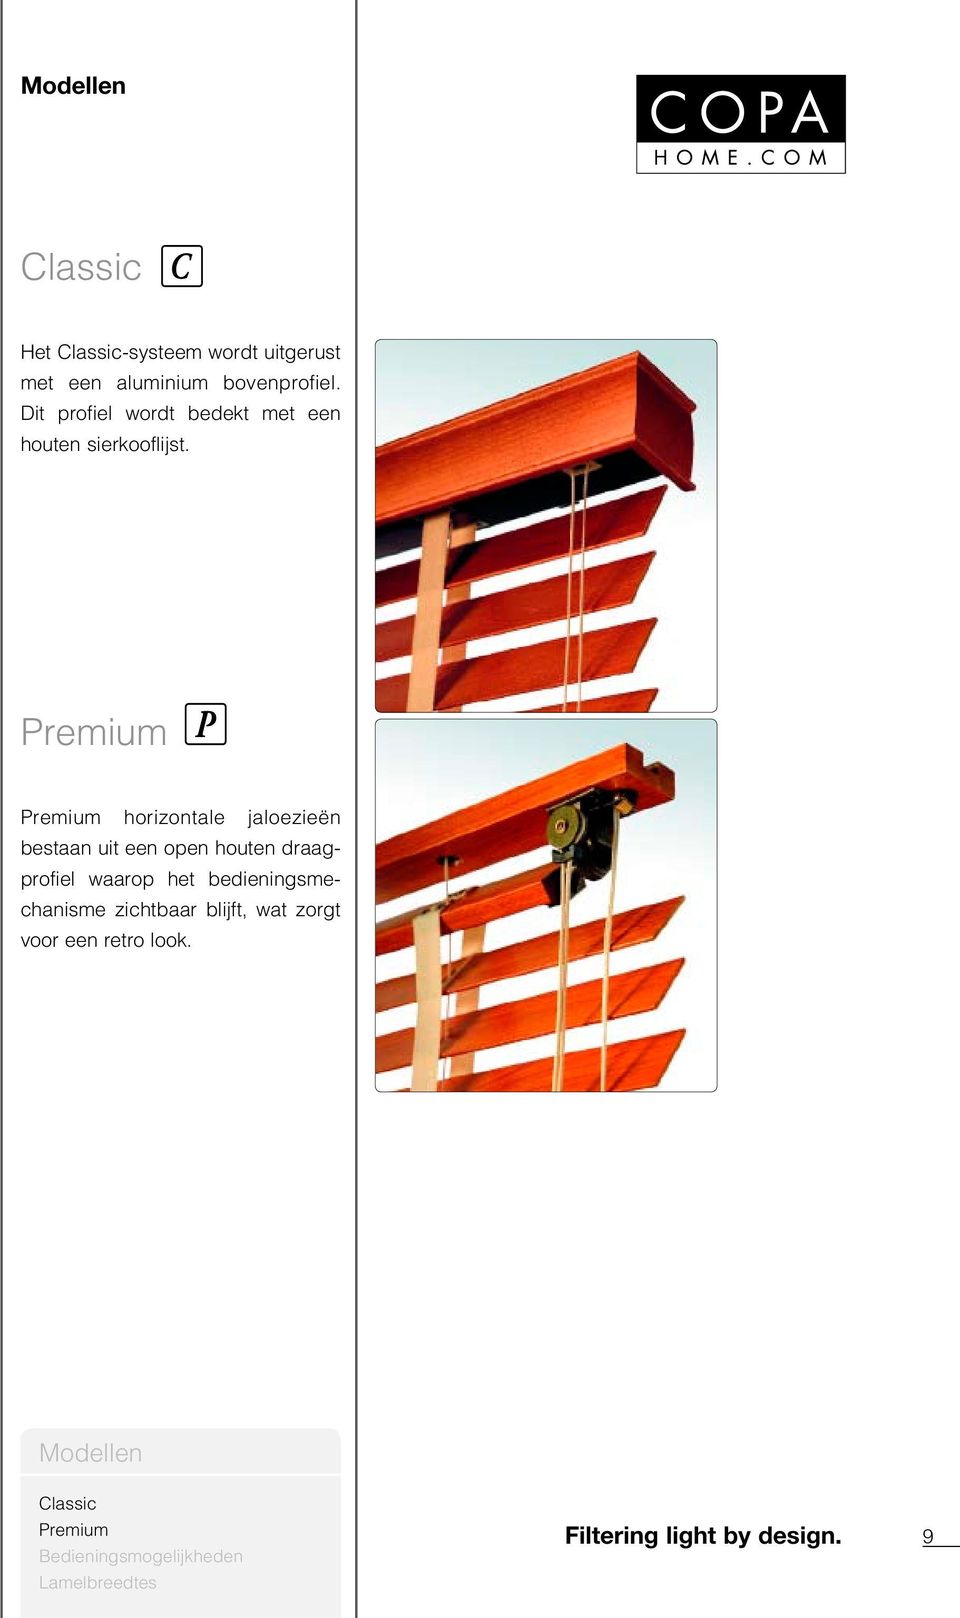 Premium Premium horizontale jaloezieën bestaan uit een open houten draagprofiel waarop het